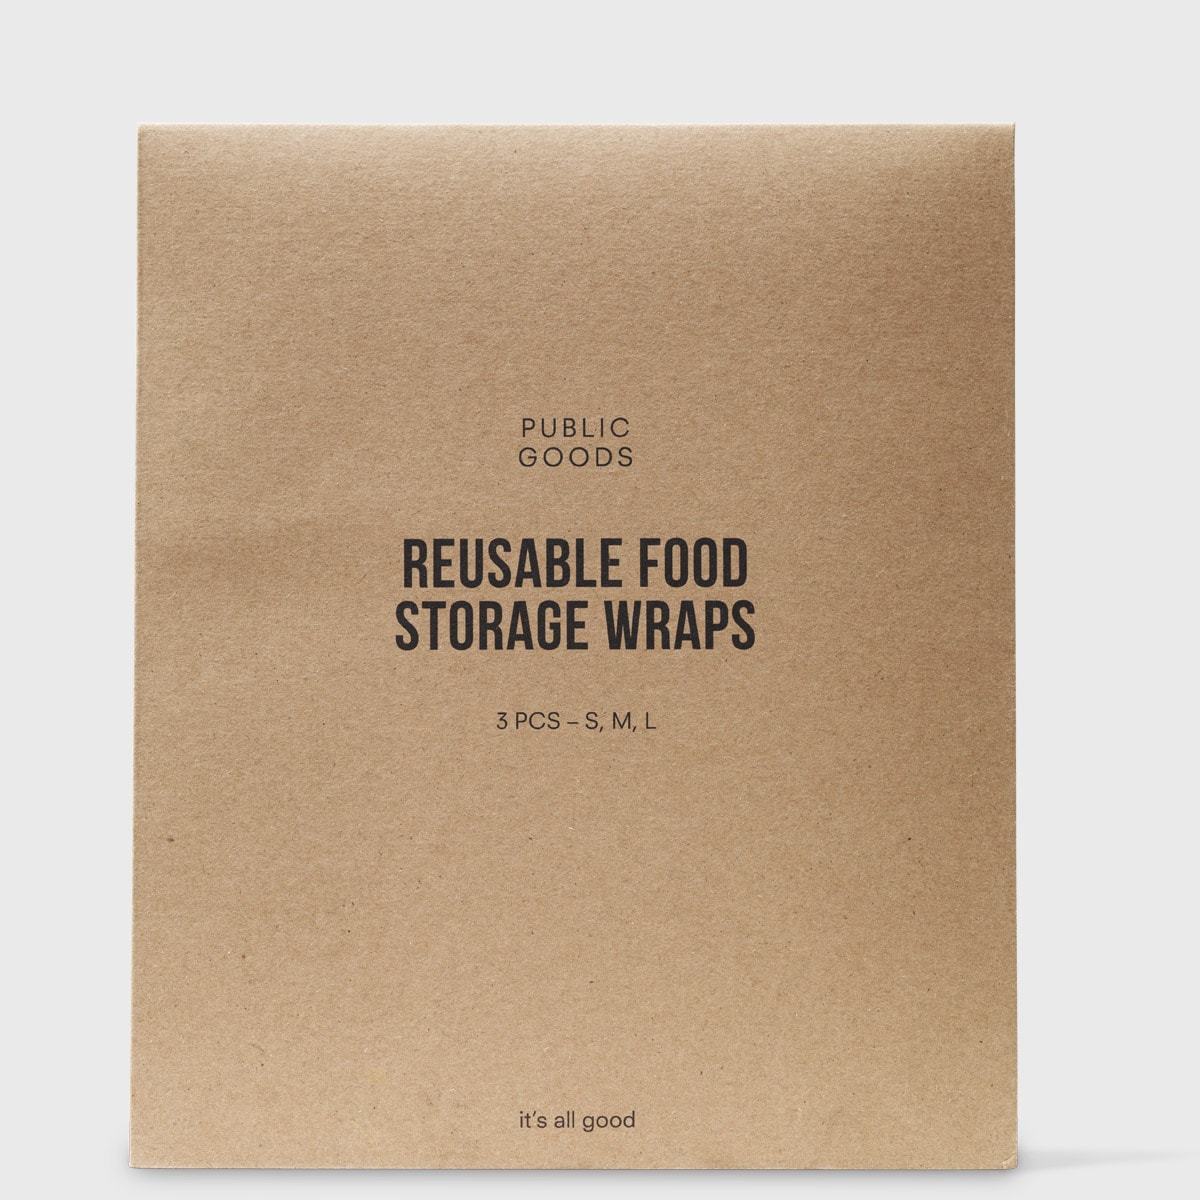 Reusable Food Storage Wraps